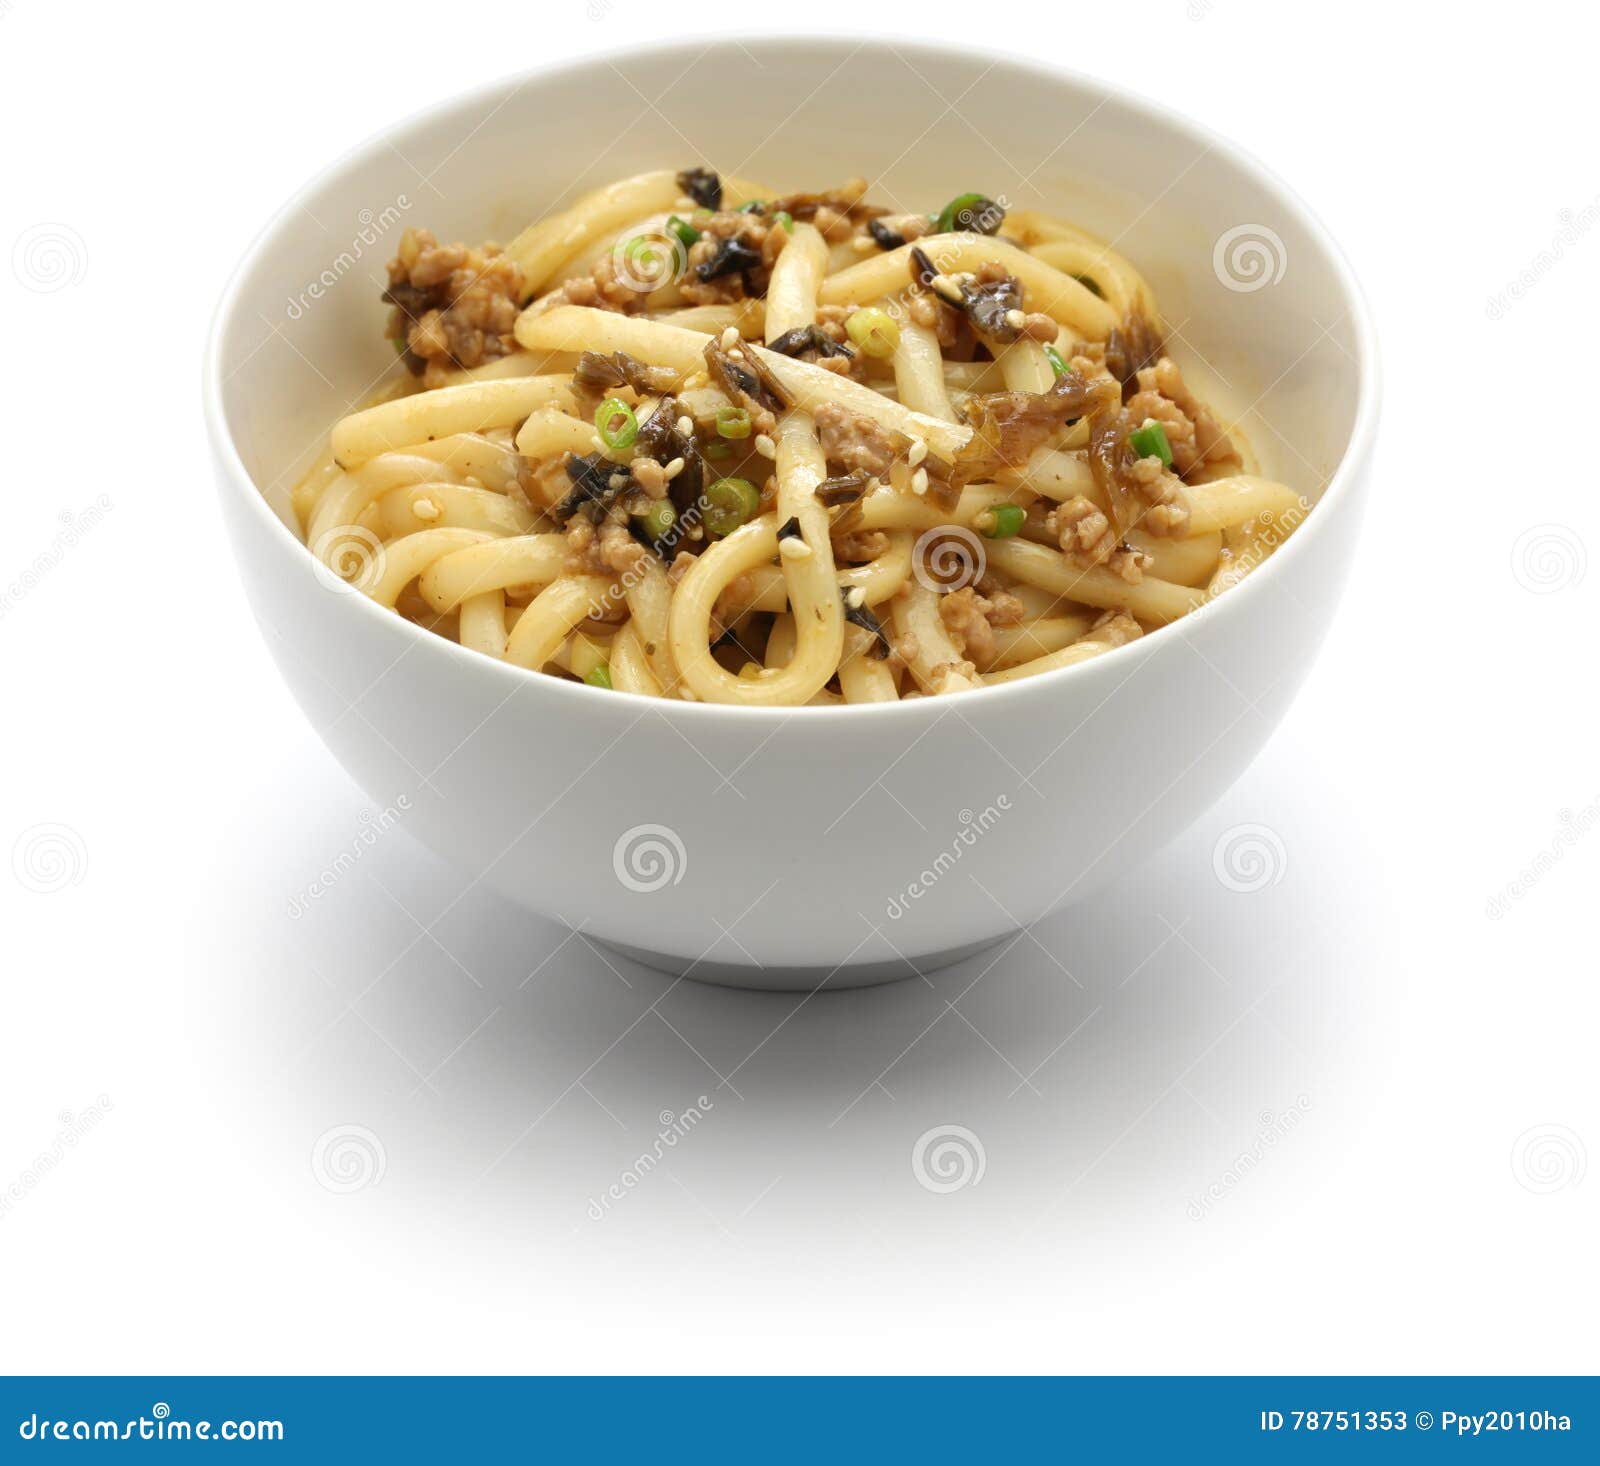 dan dan noodles, chinese sichuan cuisine